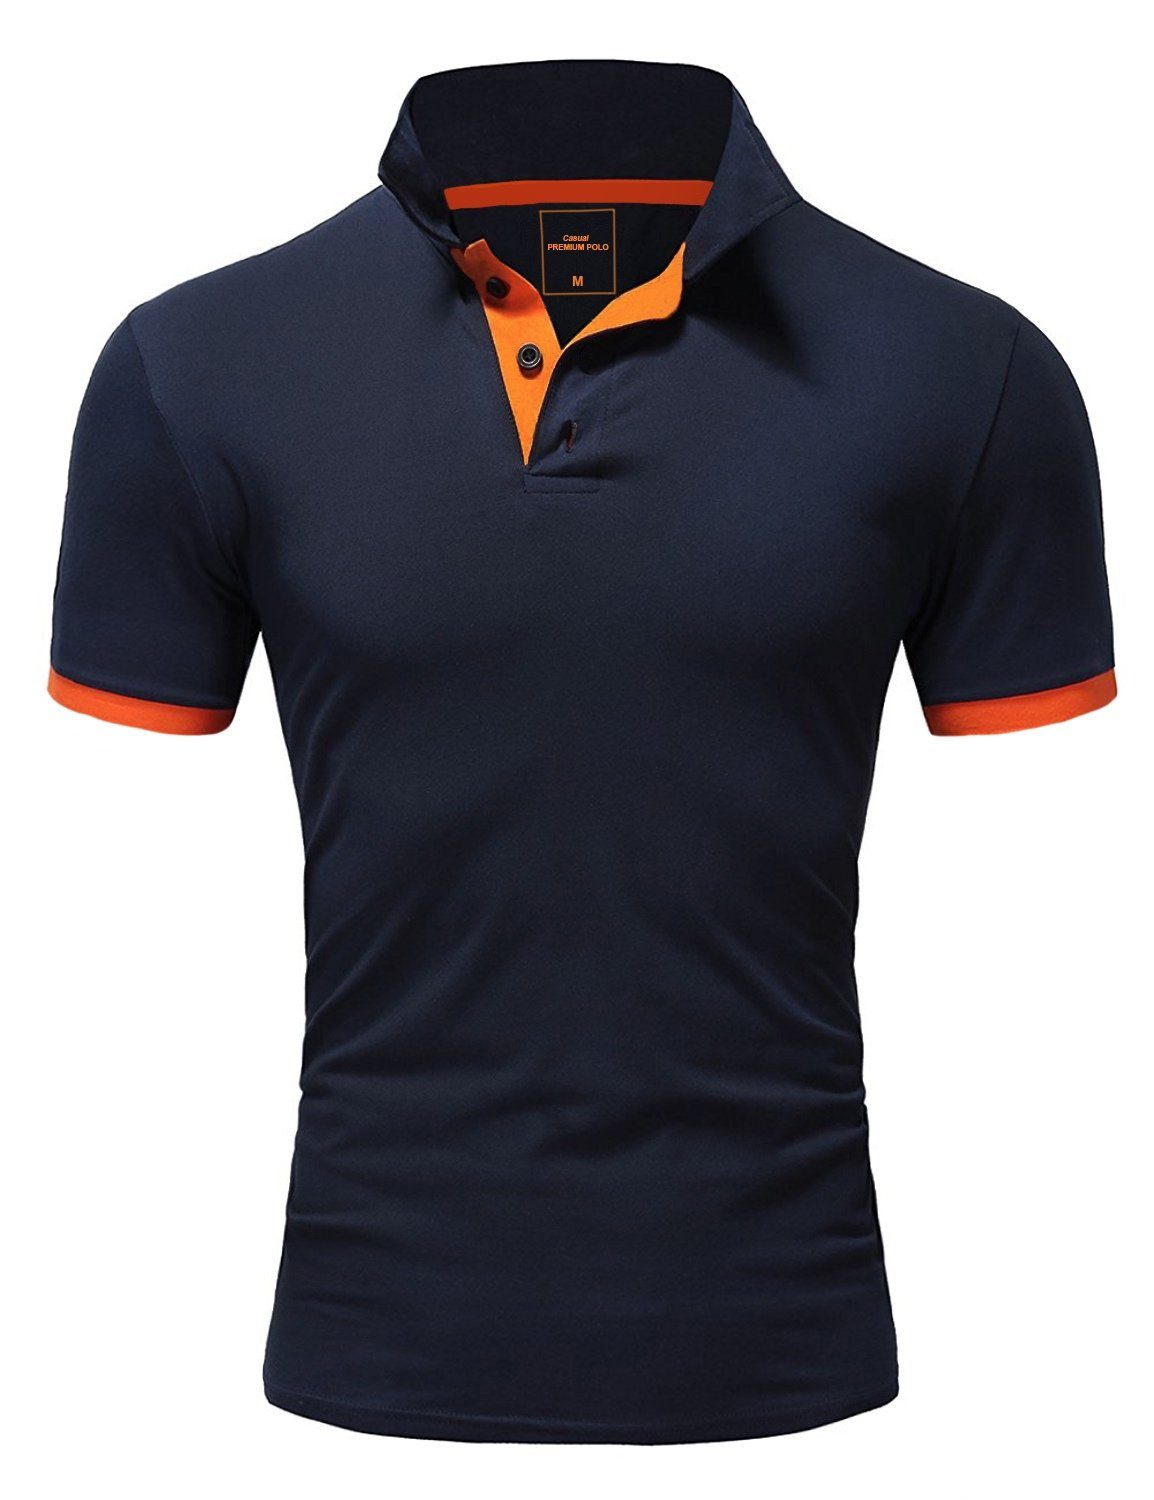 REPUBLIX Poloshirt RONALD Herren Shirt mit kontrastierenden Akzenten, in Piqué Qualität Navyblau/Orange